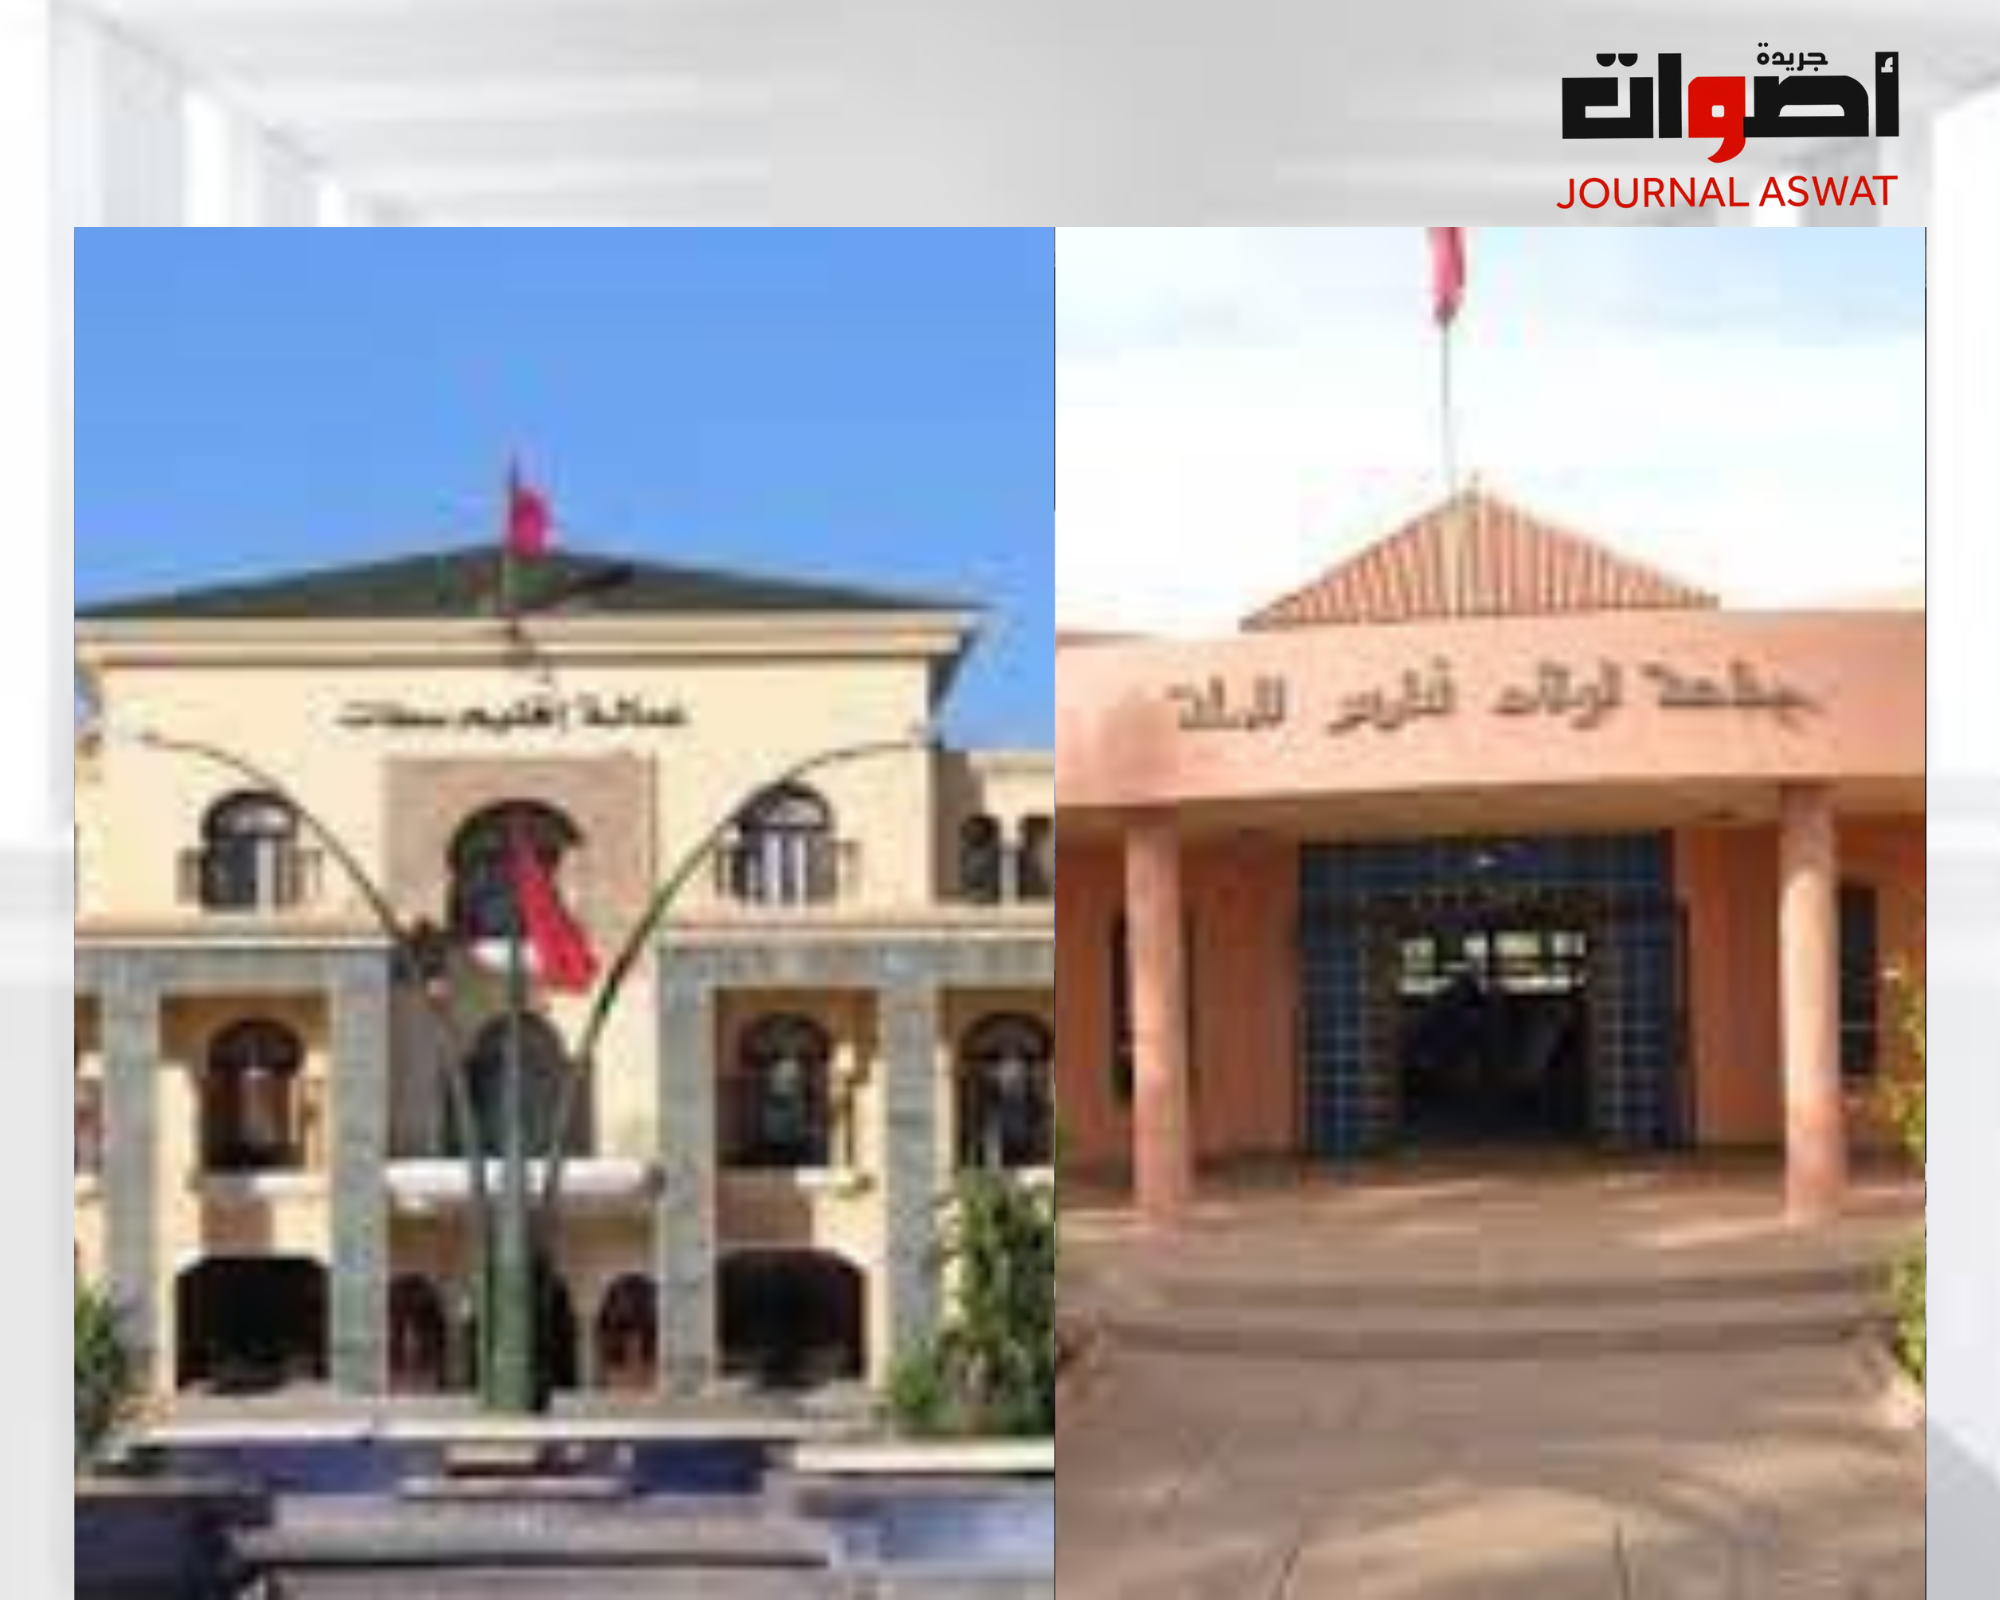 استقالة 11 عضوا جماعيا من مجلس الجماعة الترابية أولاد فارس الحلة بإقليم سطات_